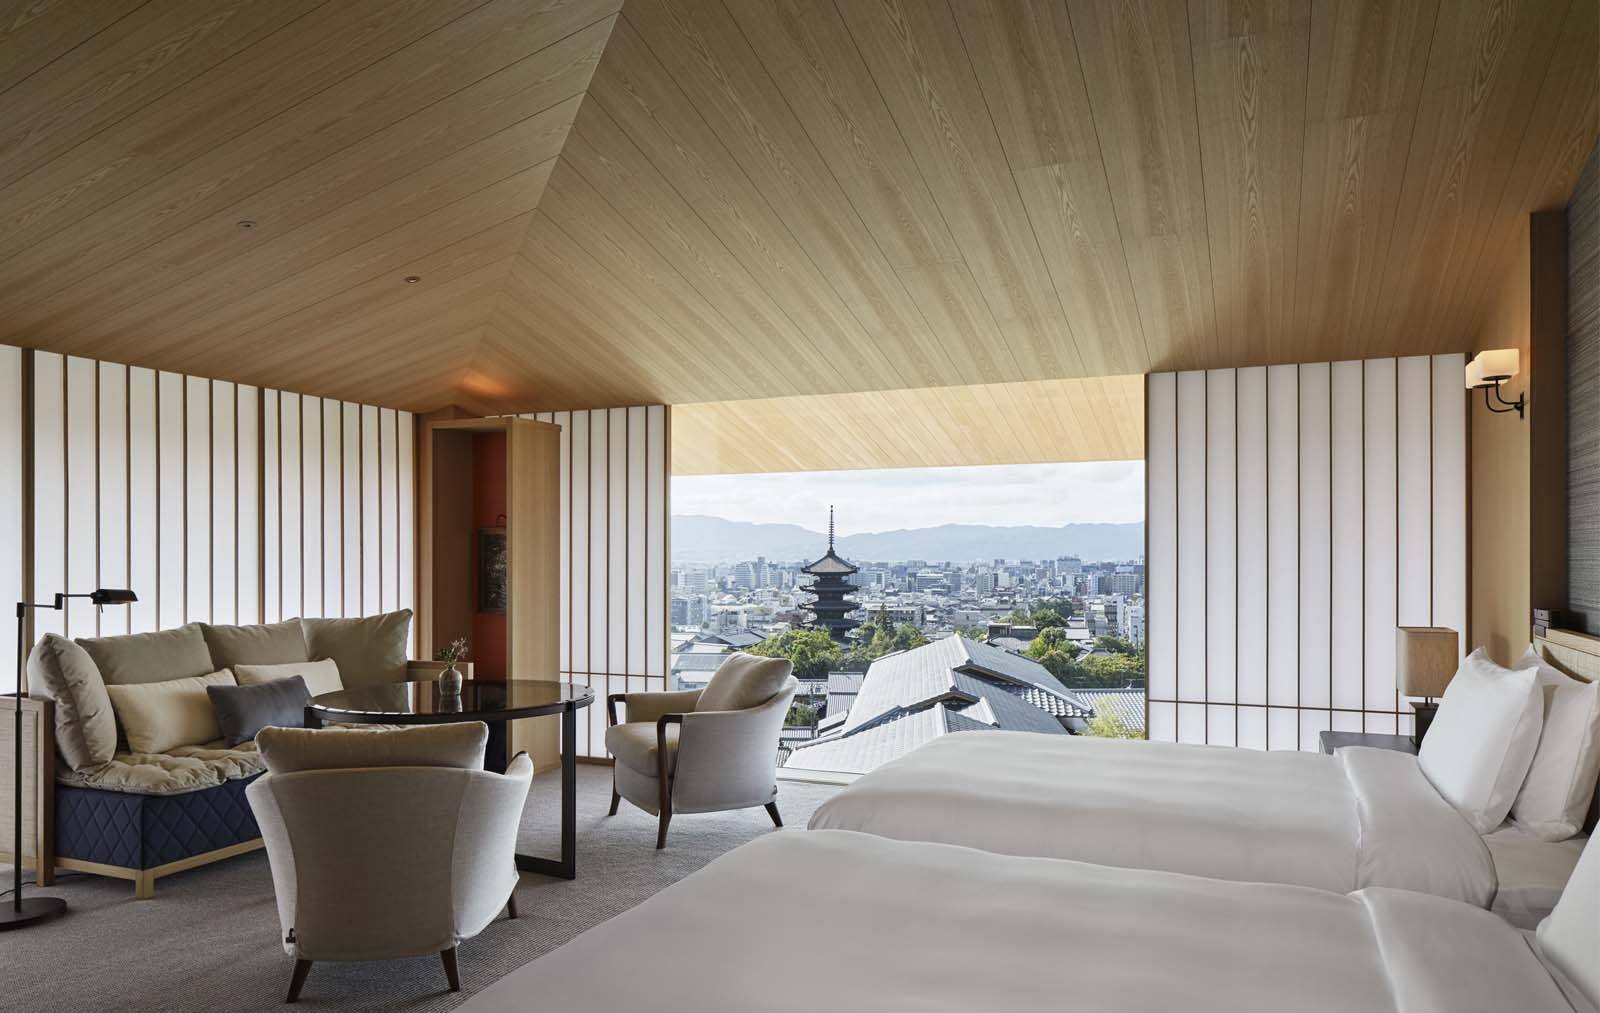 Many rooms at Park Hyatt Kyoto can enjoy sweeping city views and the Yasaka Pagoda